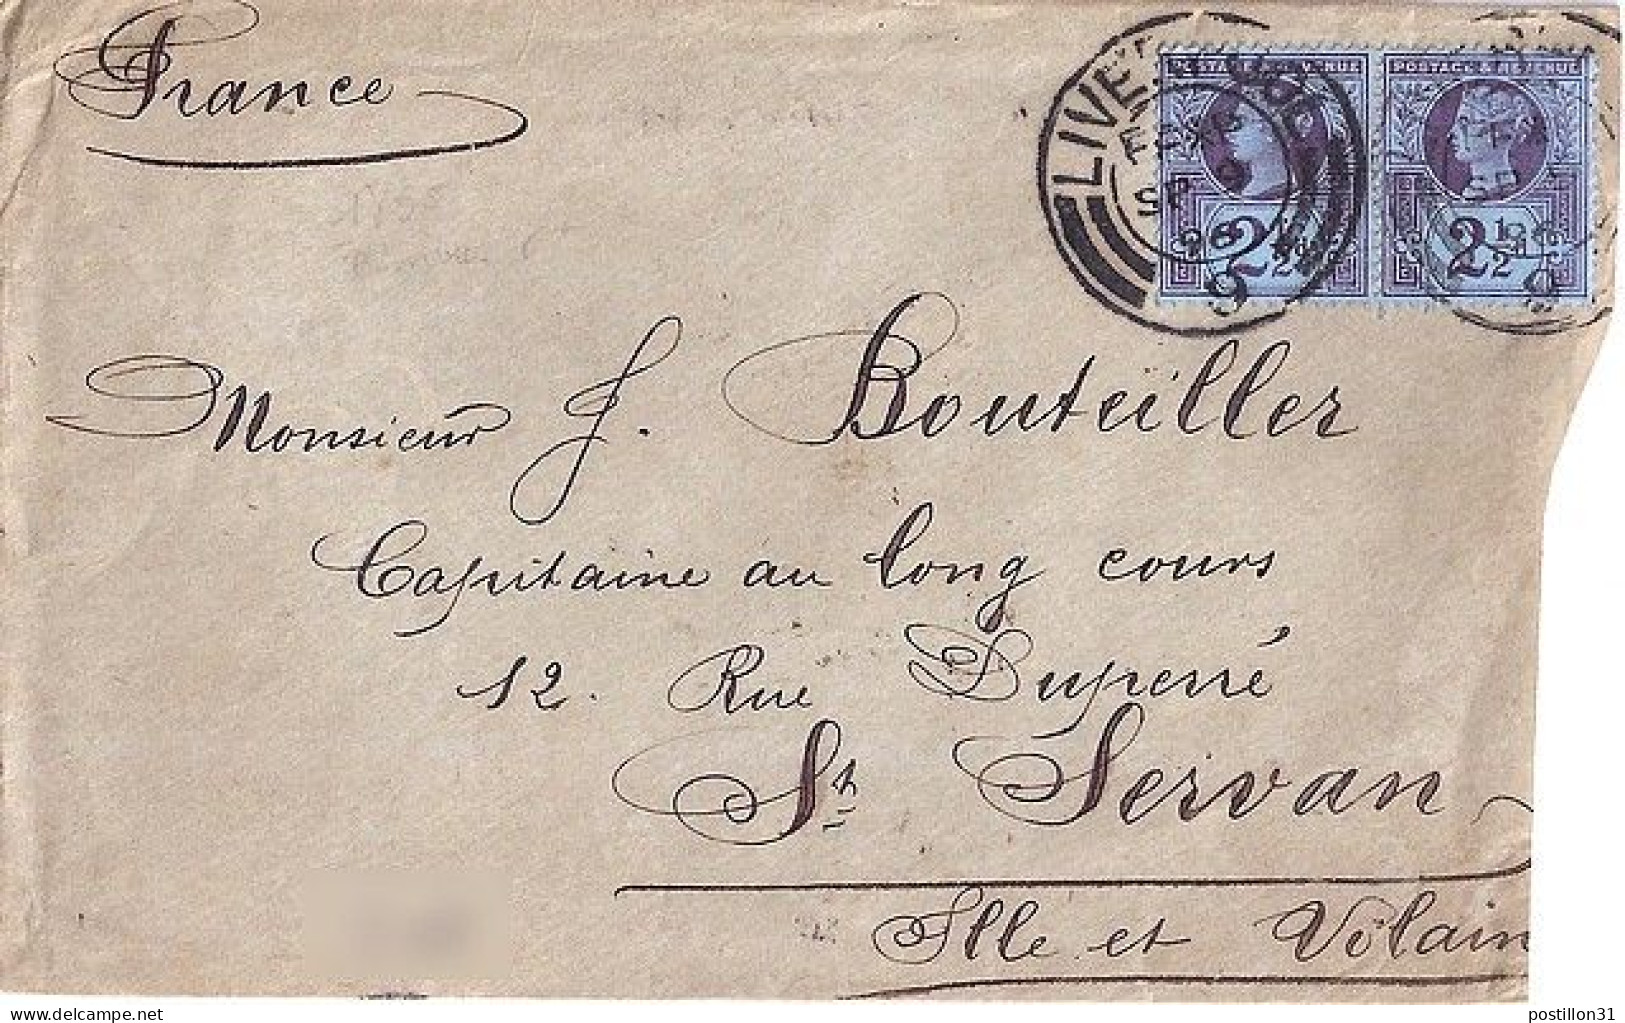 GRANDE BRETAGNE N° 95x2 S/L. DE LIVERPOOL/9.9.96 POUR LA FRANCE - Briefe U. Dokumente